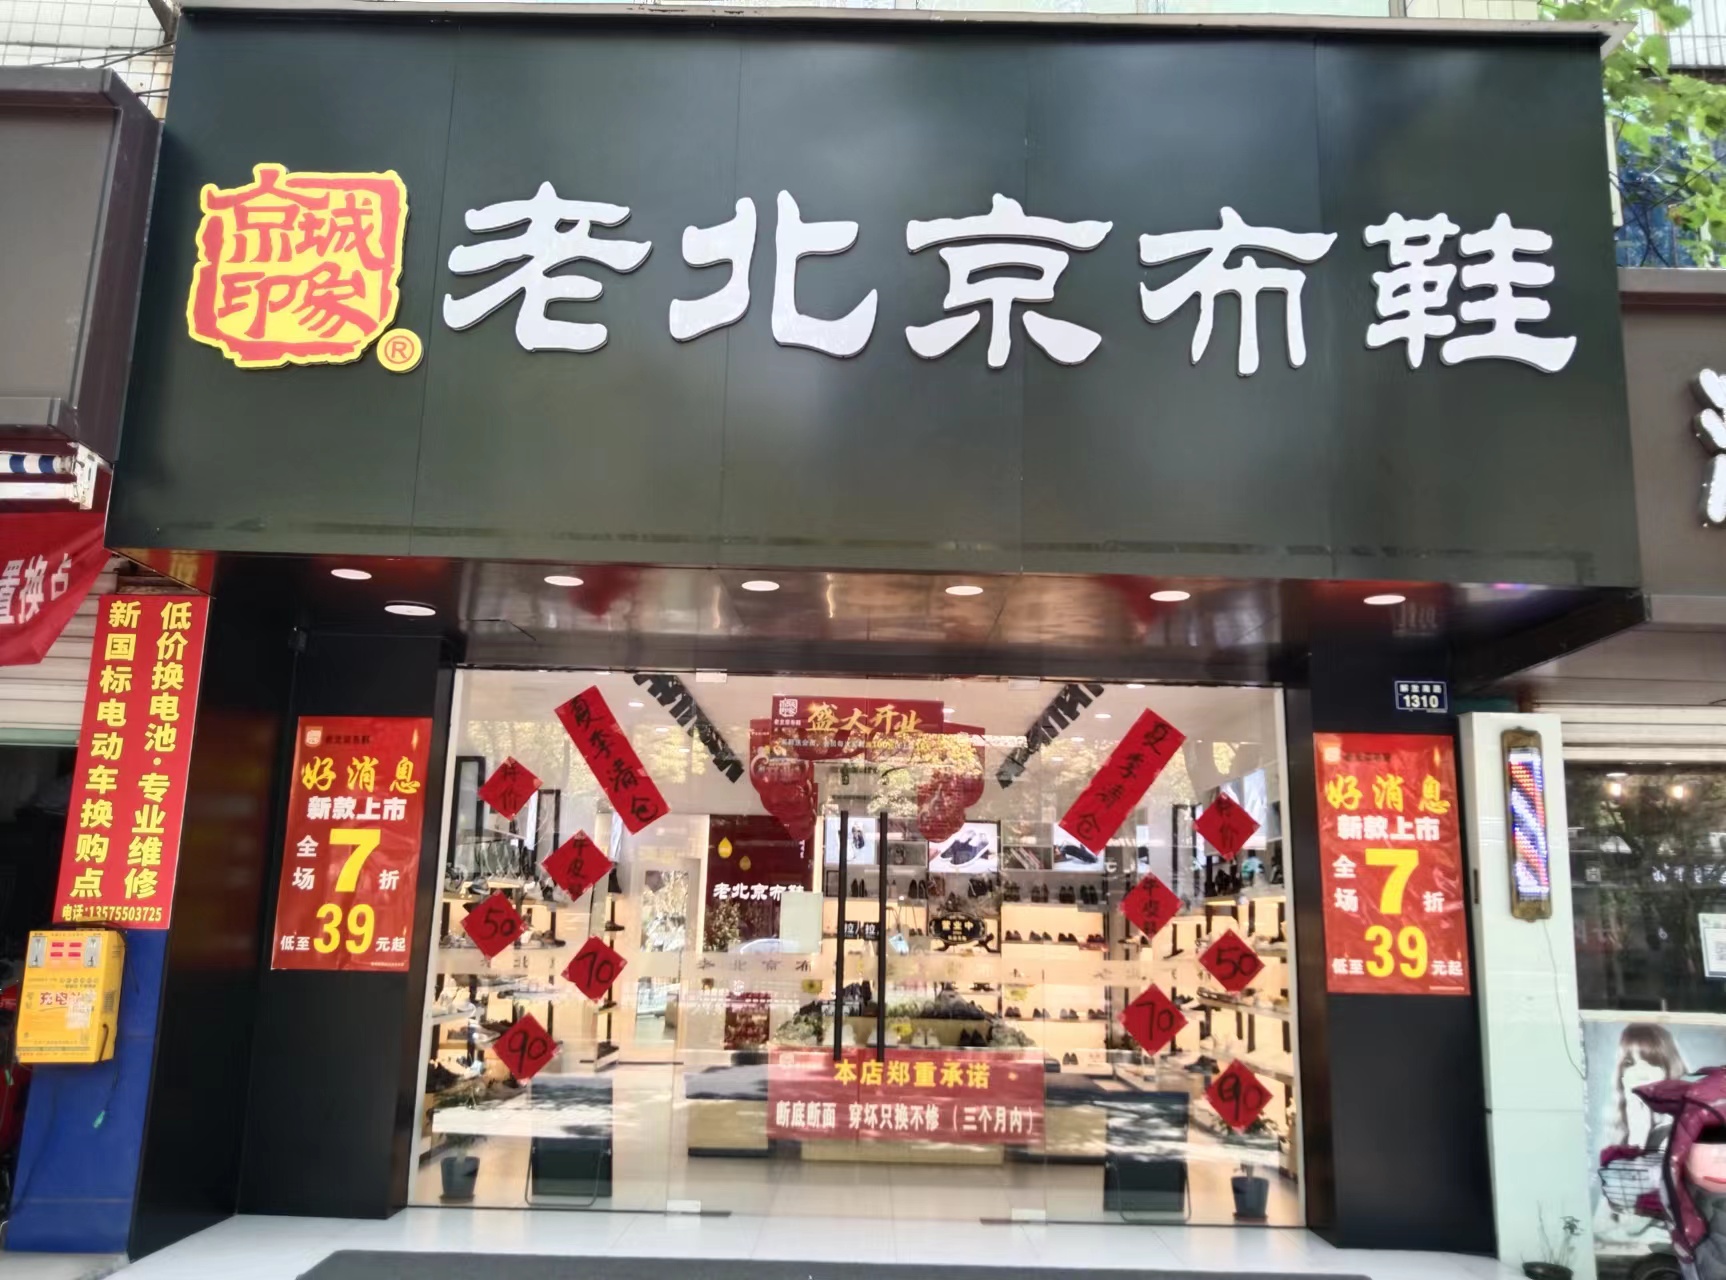 贺：京城印象老北京布鞋加盟店浙江绍兴孟老板盛大开业！